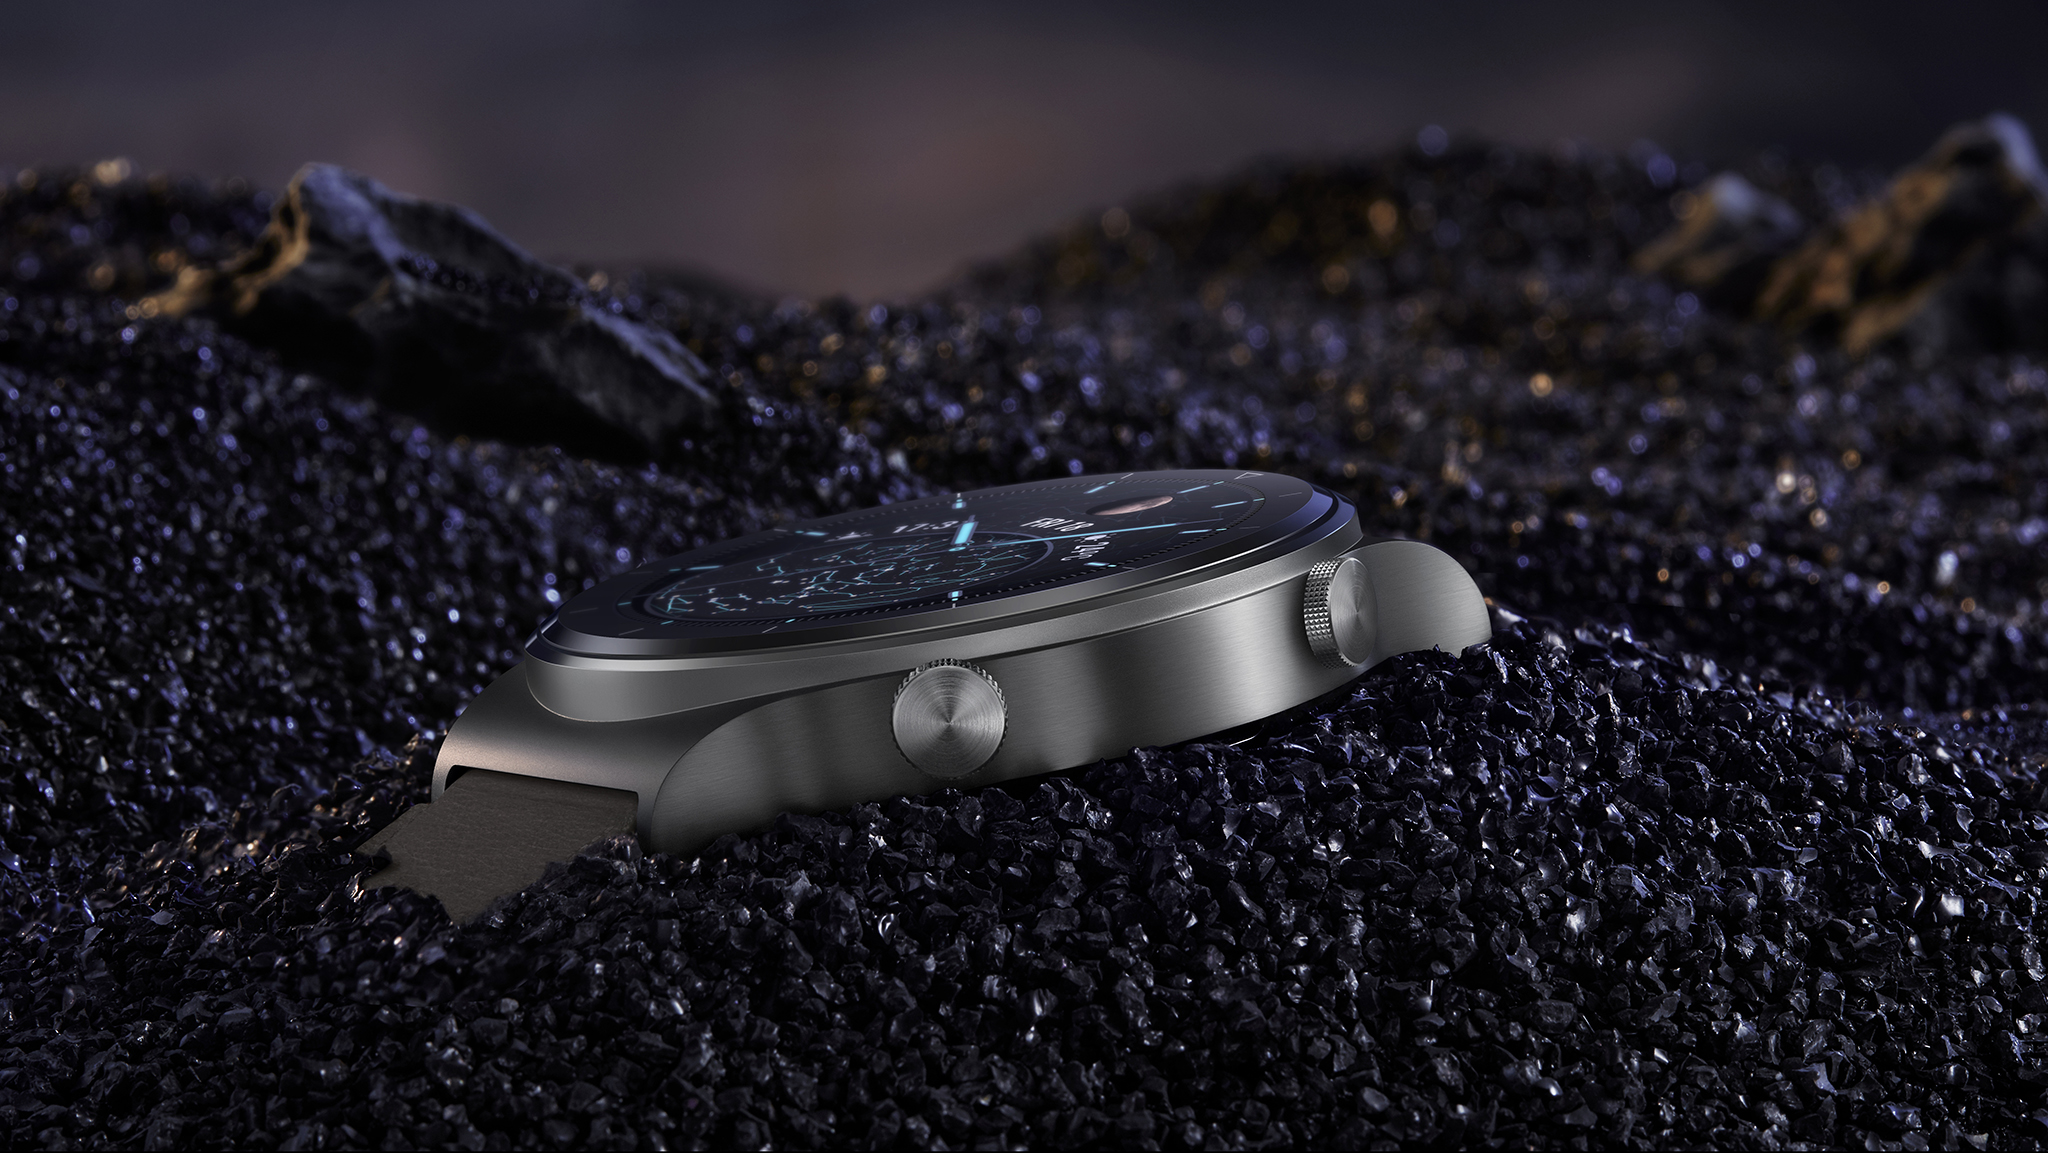 Huawei Watch GT 2 Pro ra mắt: Hoàn thiện cao cấp, nhiều chế độ luyện tập, pin 2 tuần, giá từ 8.99 triệu đồng - Ảnh 2.